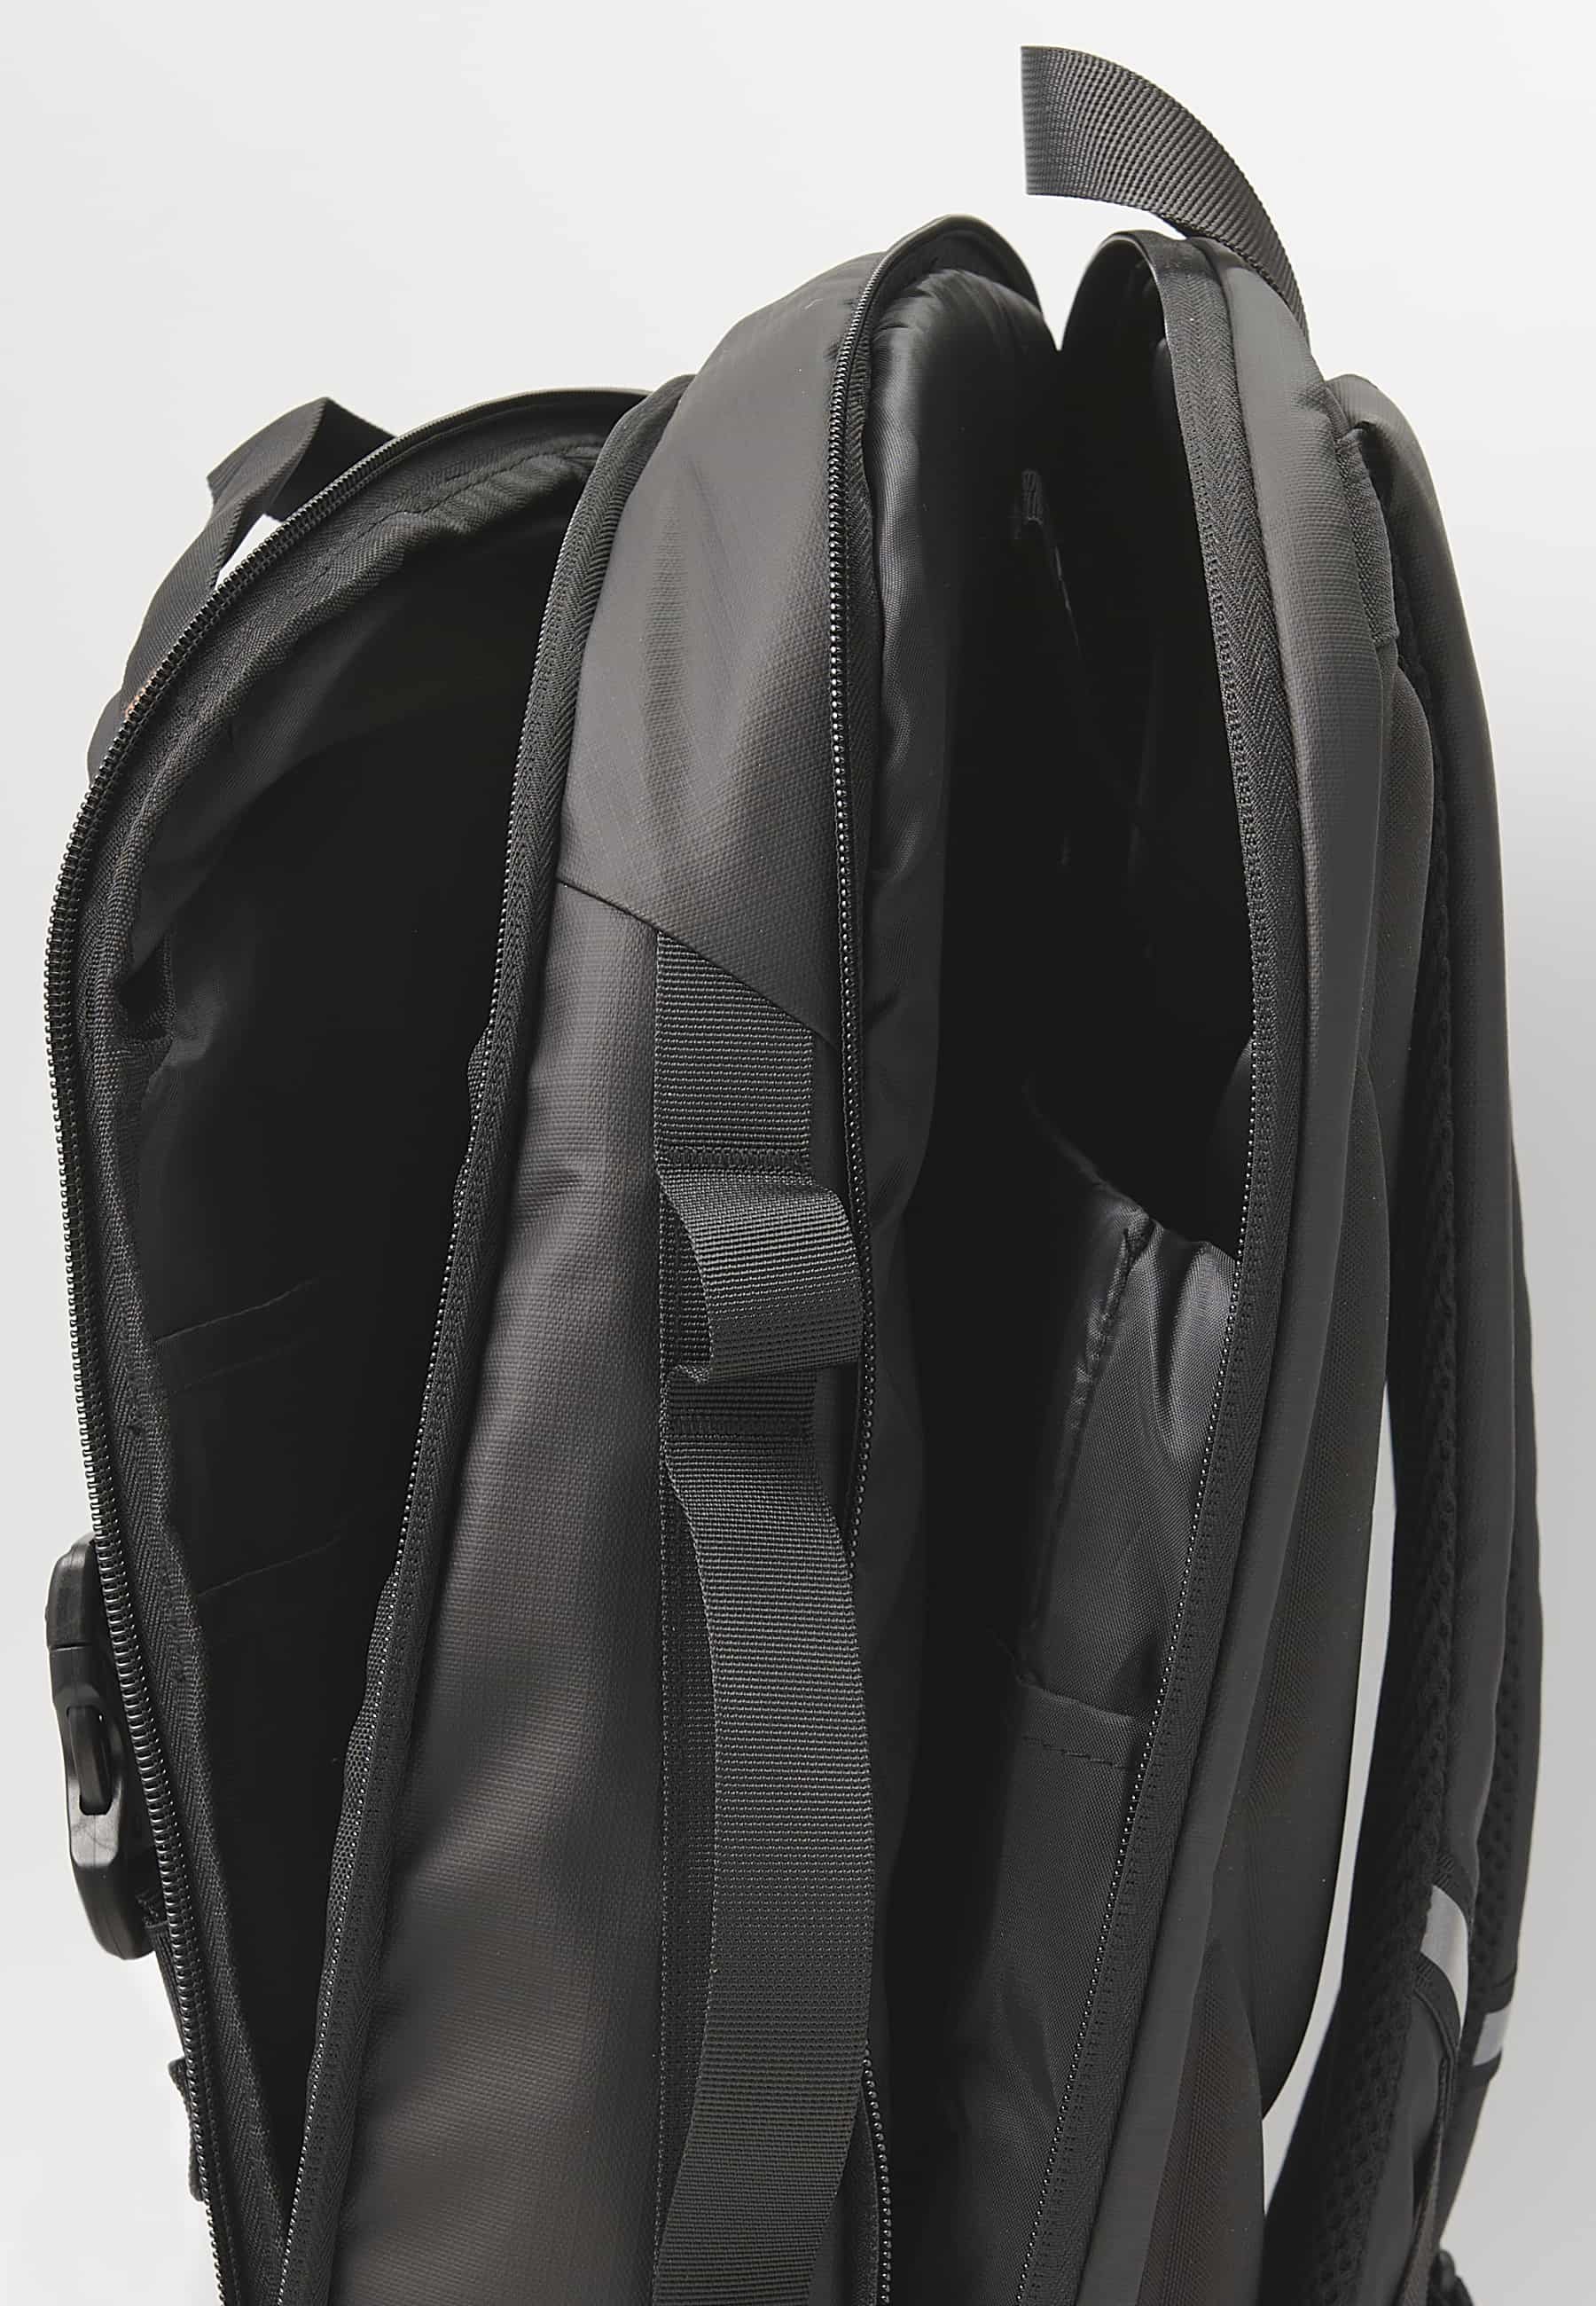 Koröshi-Rucksack mit zwei Reißverschlussfächern, eines für einen Laptop, und verstellbaren Trägern in Schwarz